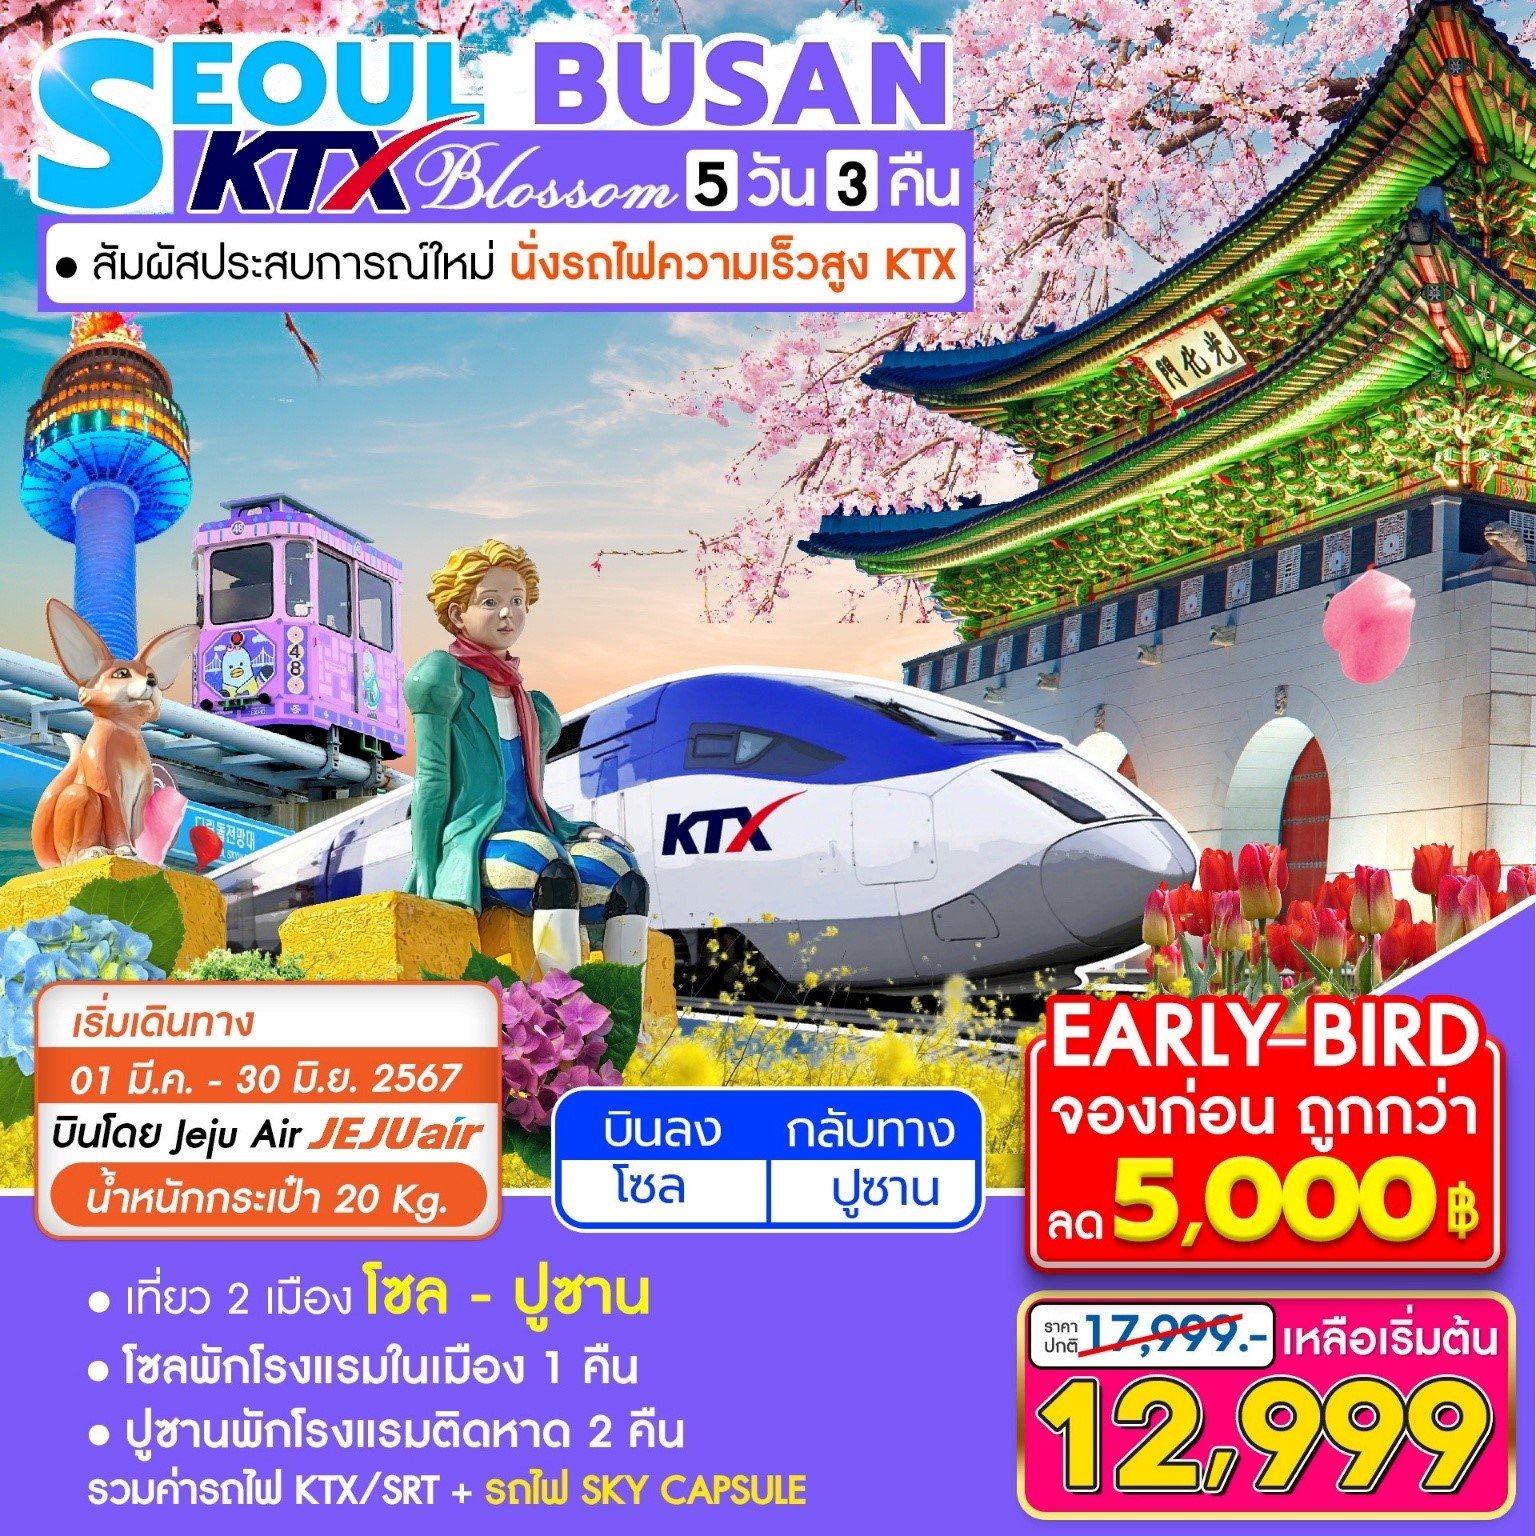 (โปรโมชั่น!!! ลด 5,000 บาท) ทัวร์เกาหลี โซล ปูซาน Blossom via KTX 5 วัน 3 คืน